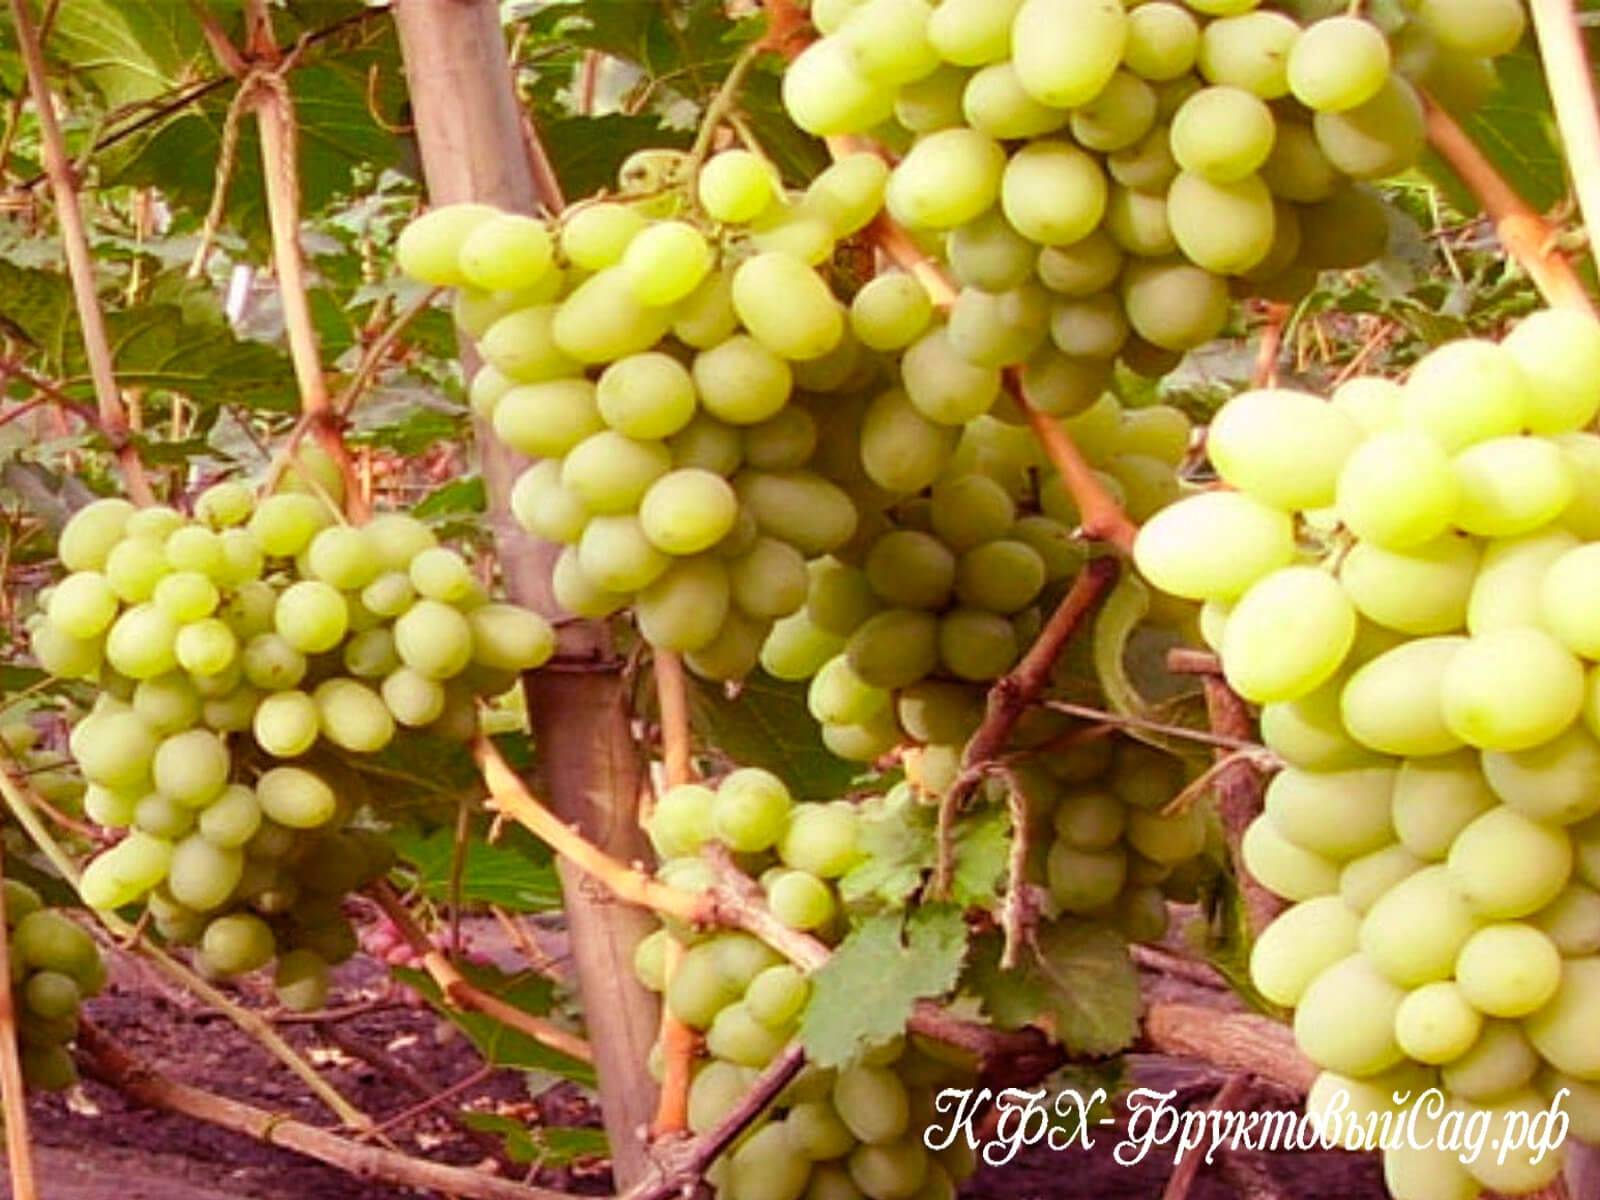 Виноград подарок запорожью: описание сорта, фото и отзывы садоводов